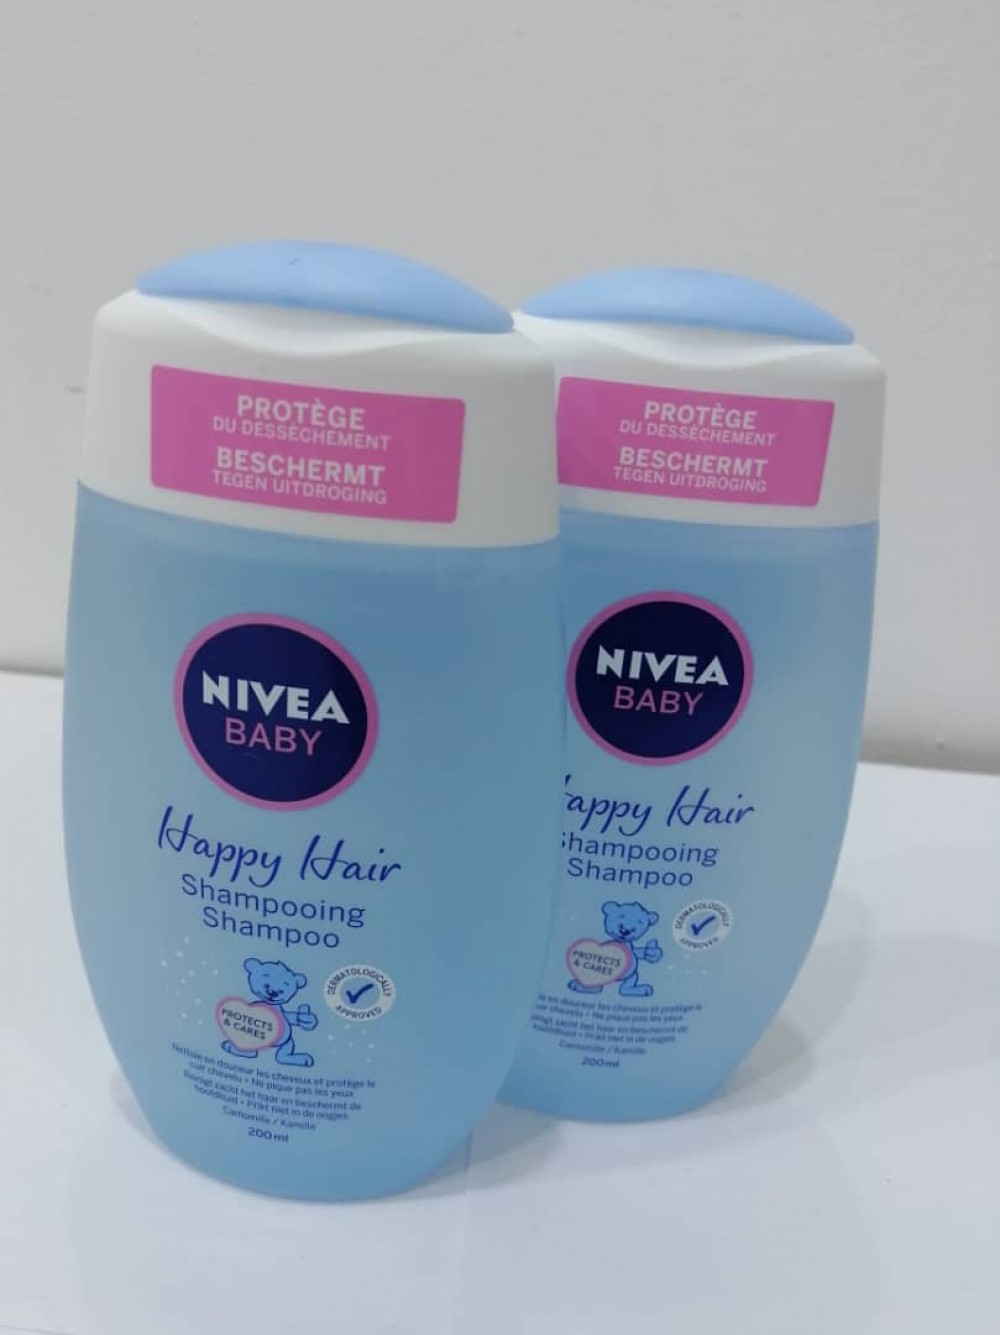 NIVEA BABY HAPPY HAIR SHAMPOING 200 ml